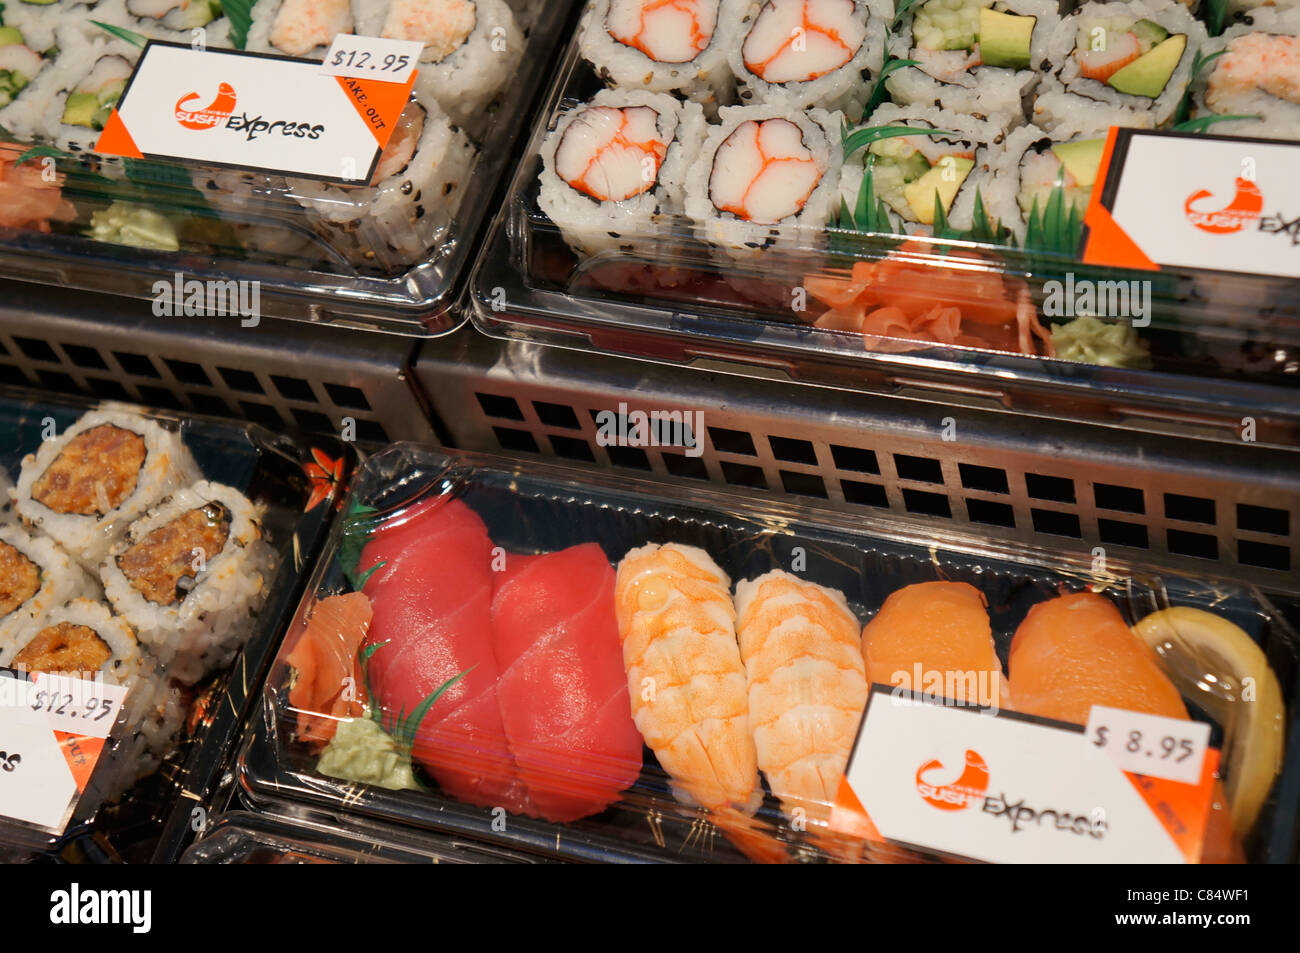 Sushi, verpackt in Kunststoff-Behältern im Kühlschrank/Gefrierfach  Stockfotografie - Alamy